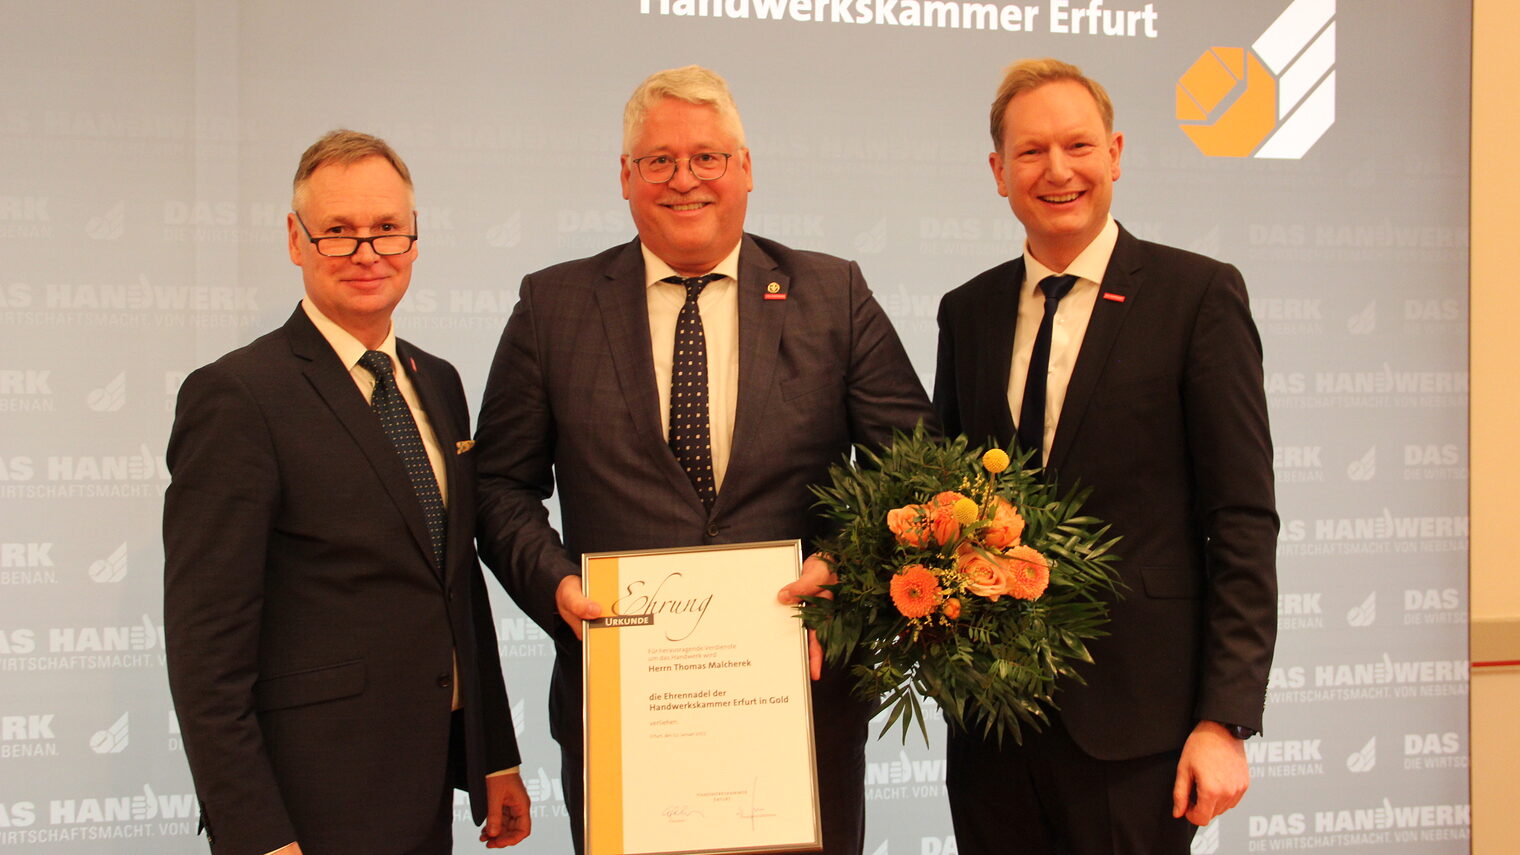 Von links: Stefan Lobenstein (Präsident), Thomas Malcherek (Hauptgeschäftsführer), Tobias Hinz (stellv. Hauptgeschäftsführer).